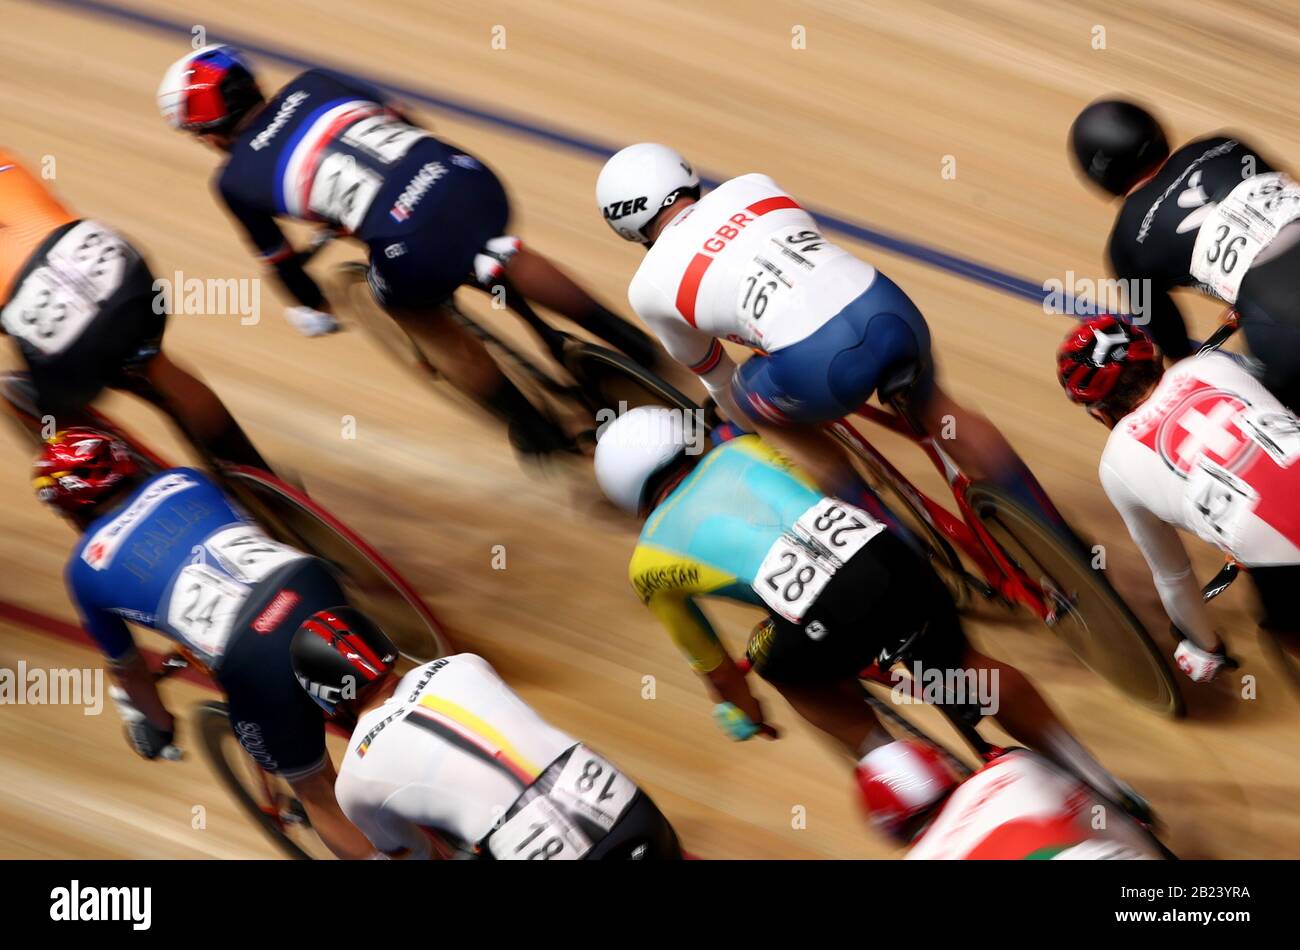 Matthew Walls (centro) della Gran Bretagna compete nella gara di Eliminazione Omnium maschile durante il quarto giorno dei Campionati mondiali di ciclismo su pista UCI 2020 a Velodrom, Berlino. Foto Stock